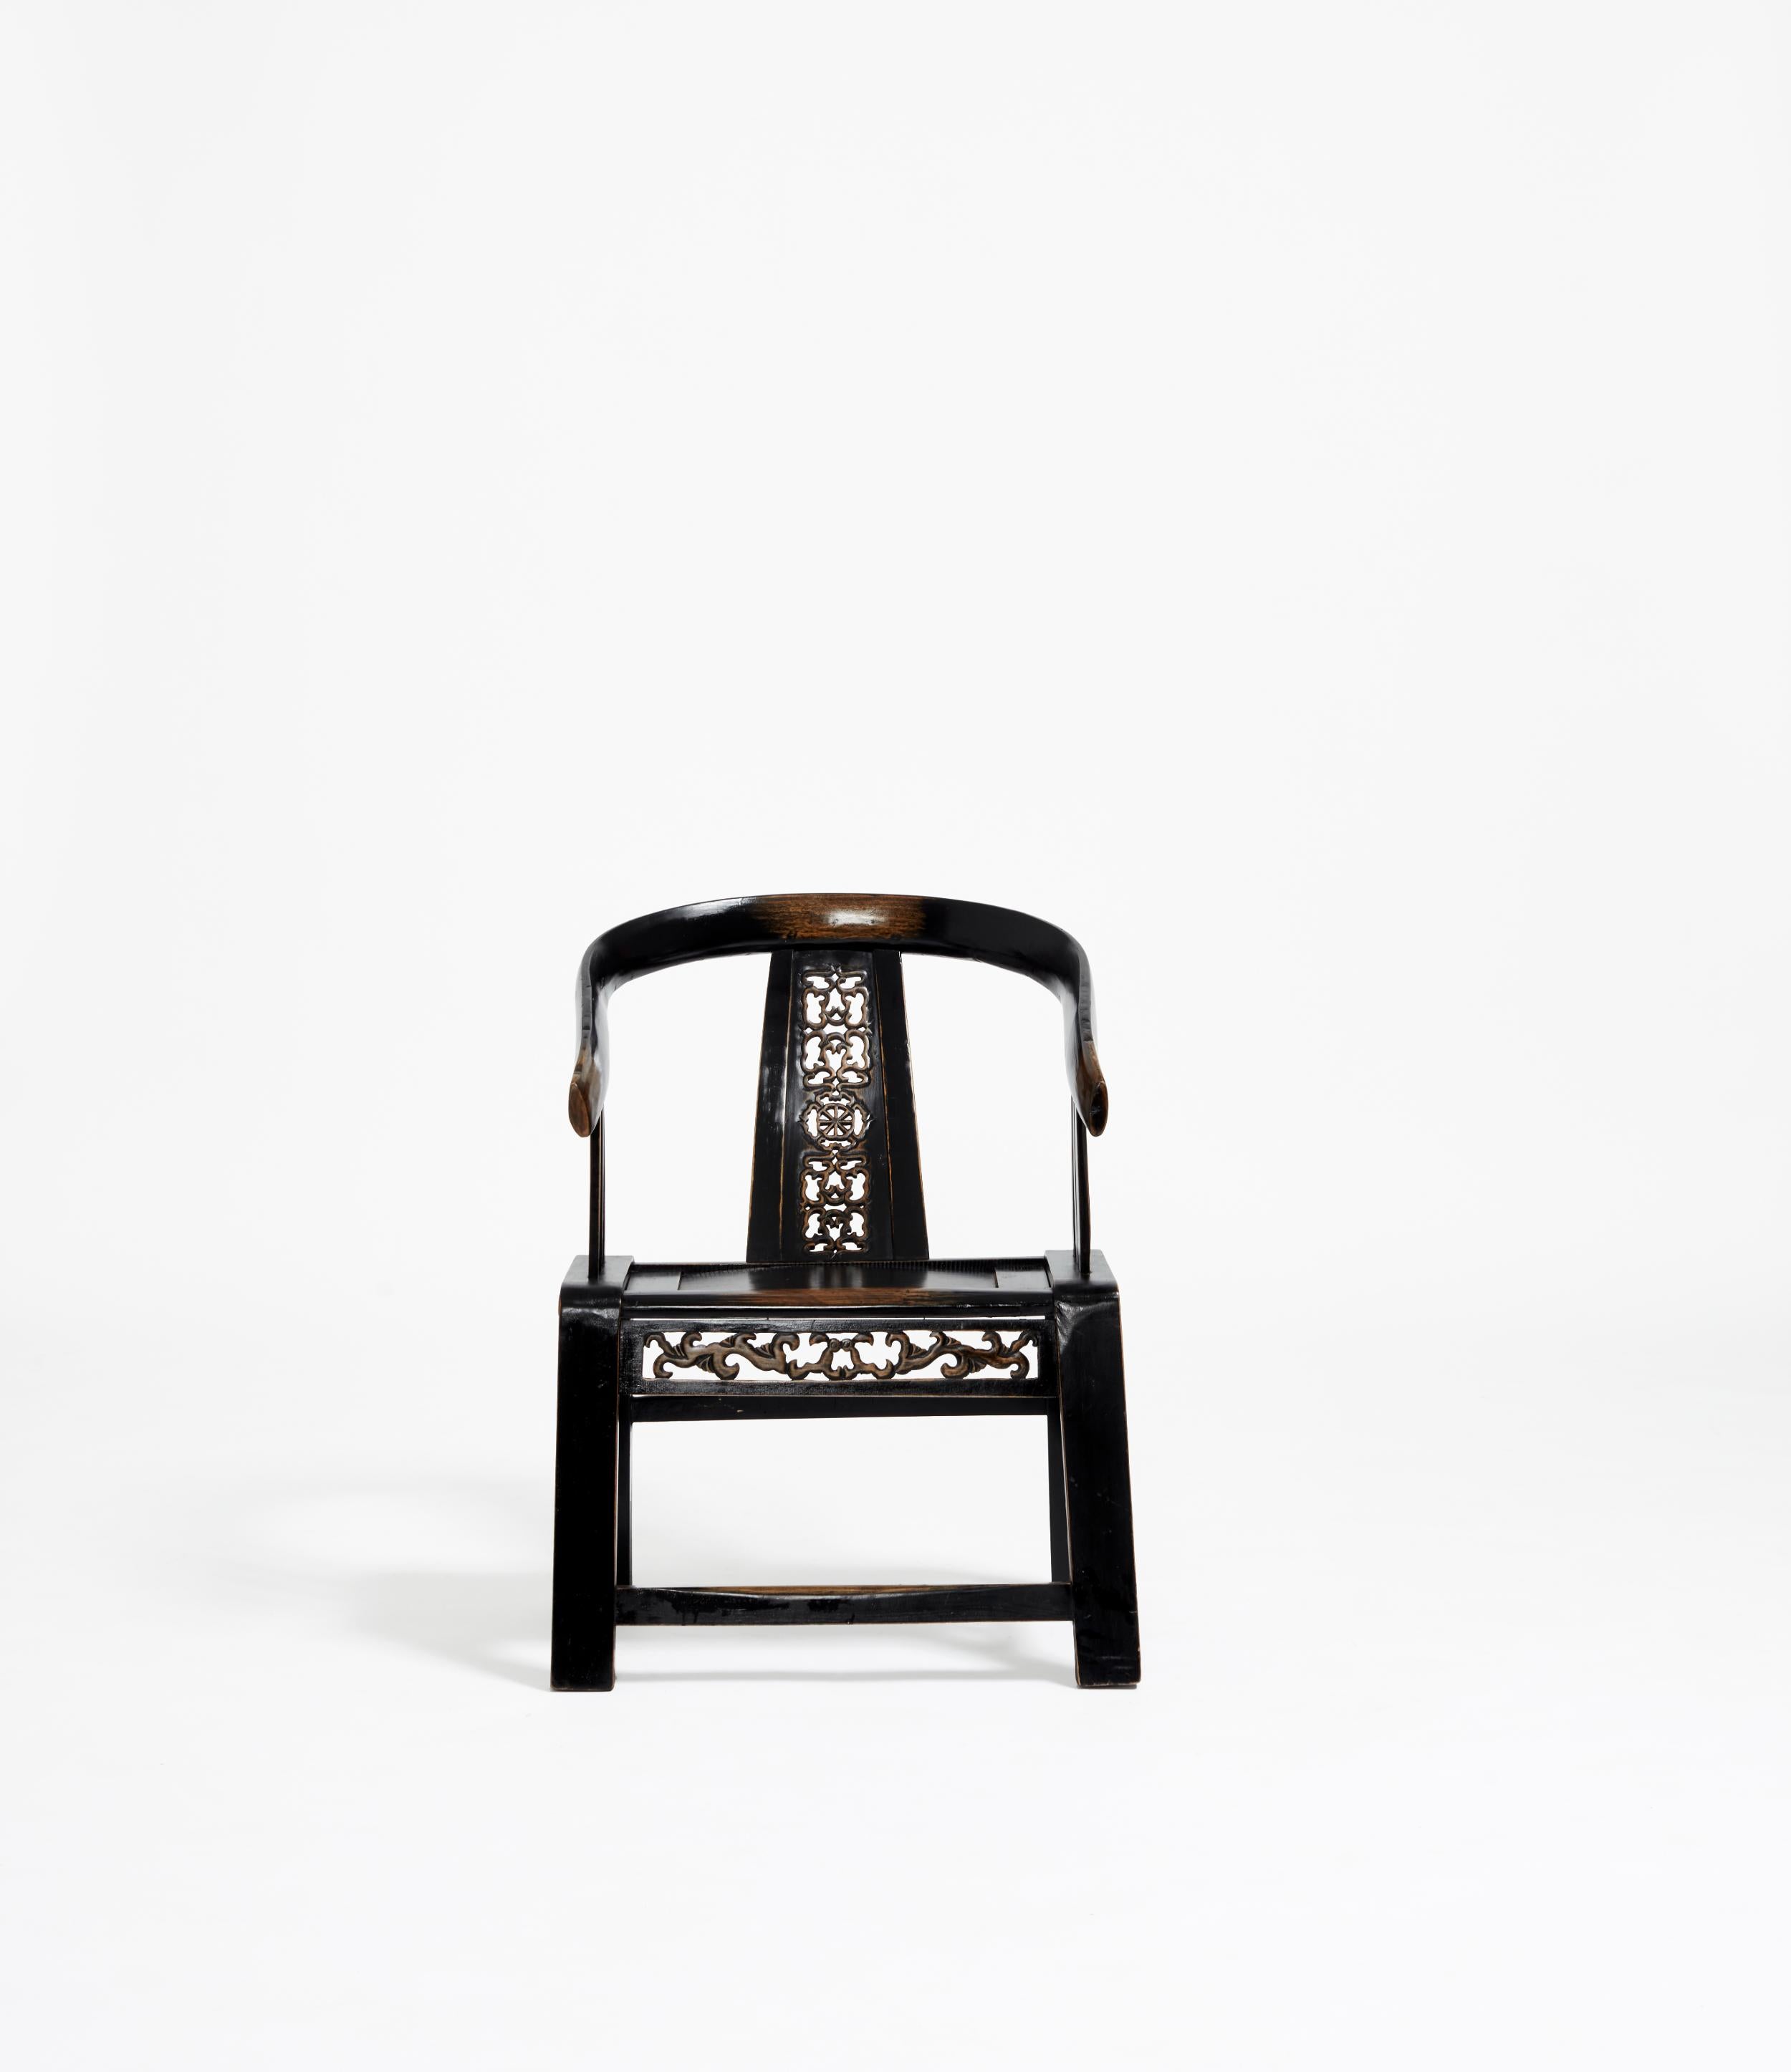 Dieser Huanghuali-Stuhl aus der Ming-Dynastie ist eine überarbeitete Version der früheren Song-Dynastie, bei der archaische Ausdrücke als historische Referenz in das Design eingebettet wurden.